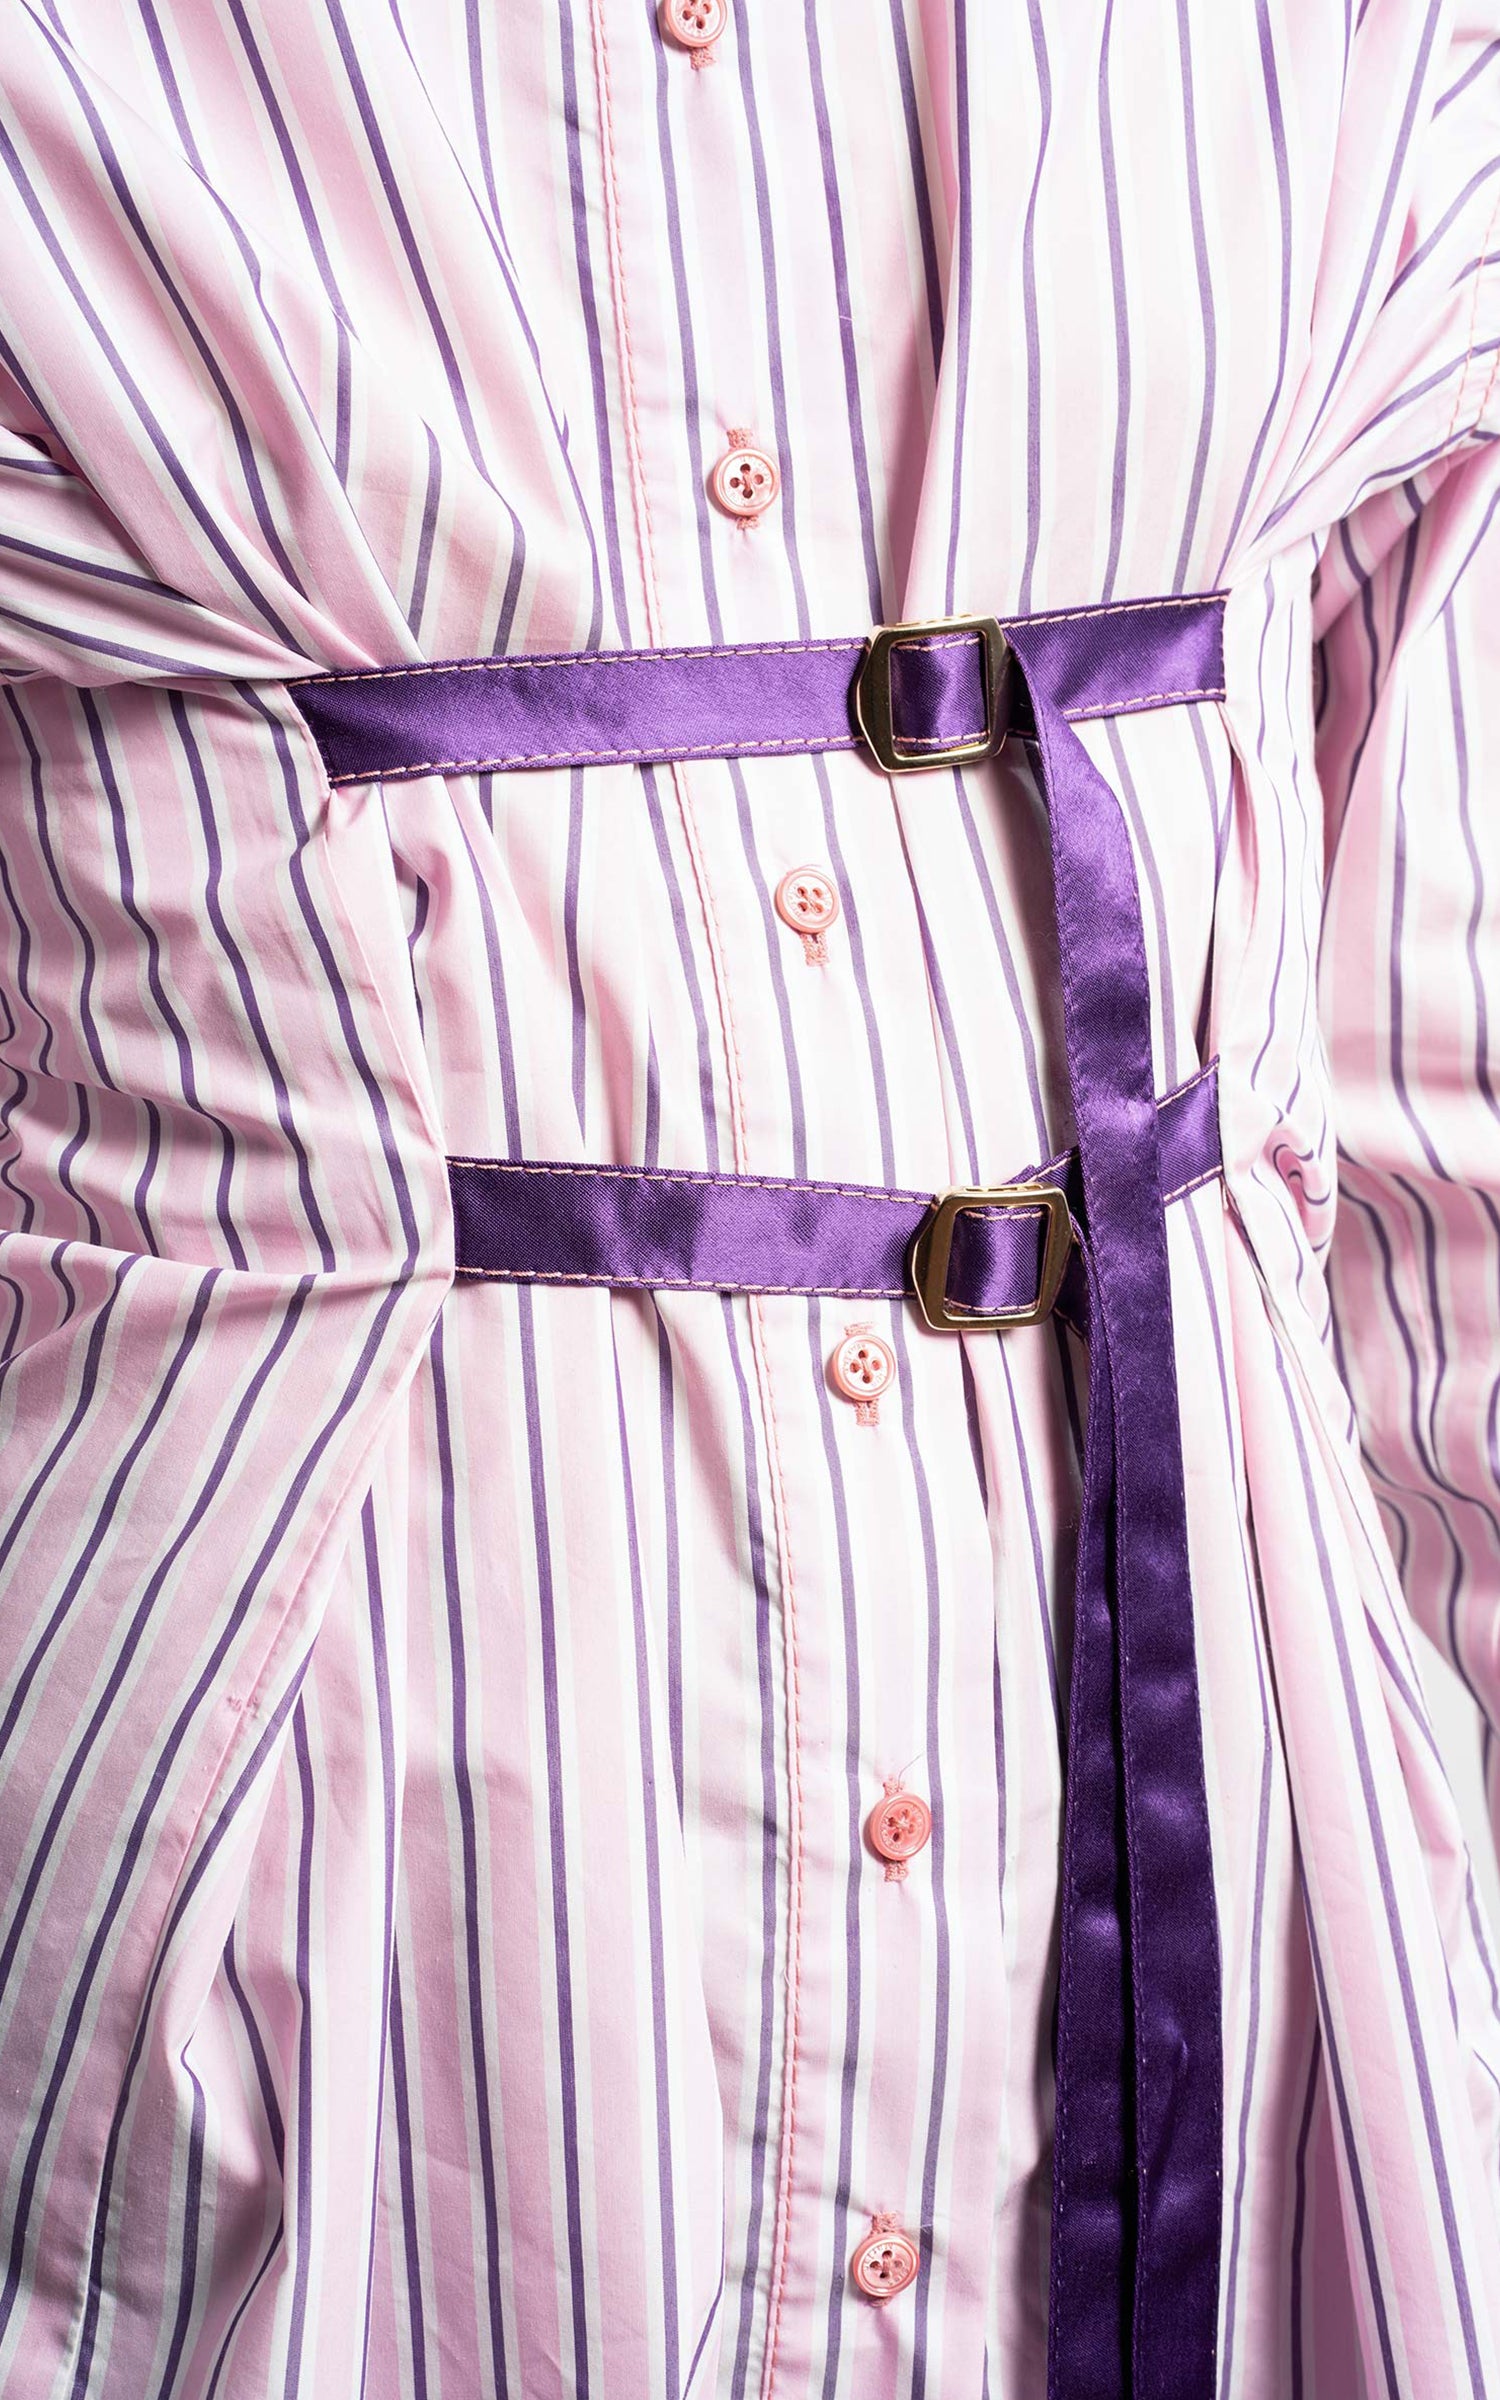 Silvia Striped Poplin Belt Shirt Dress